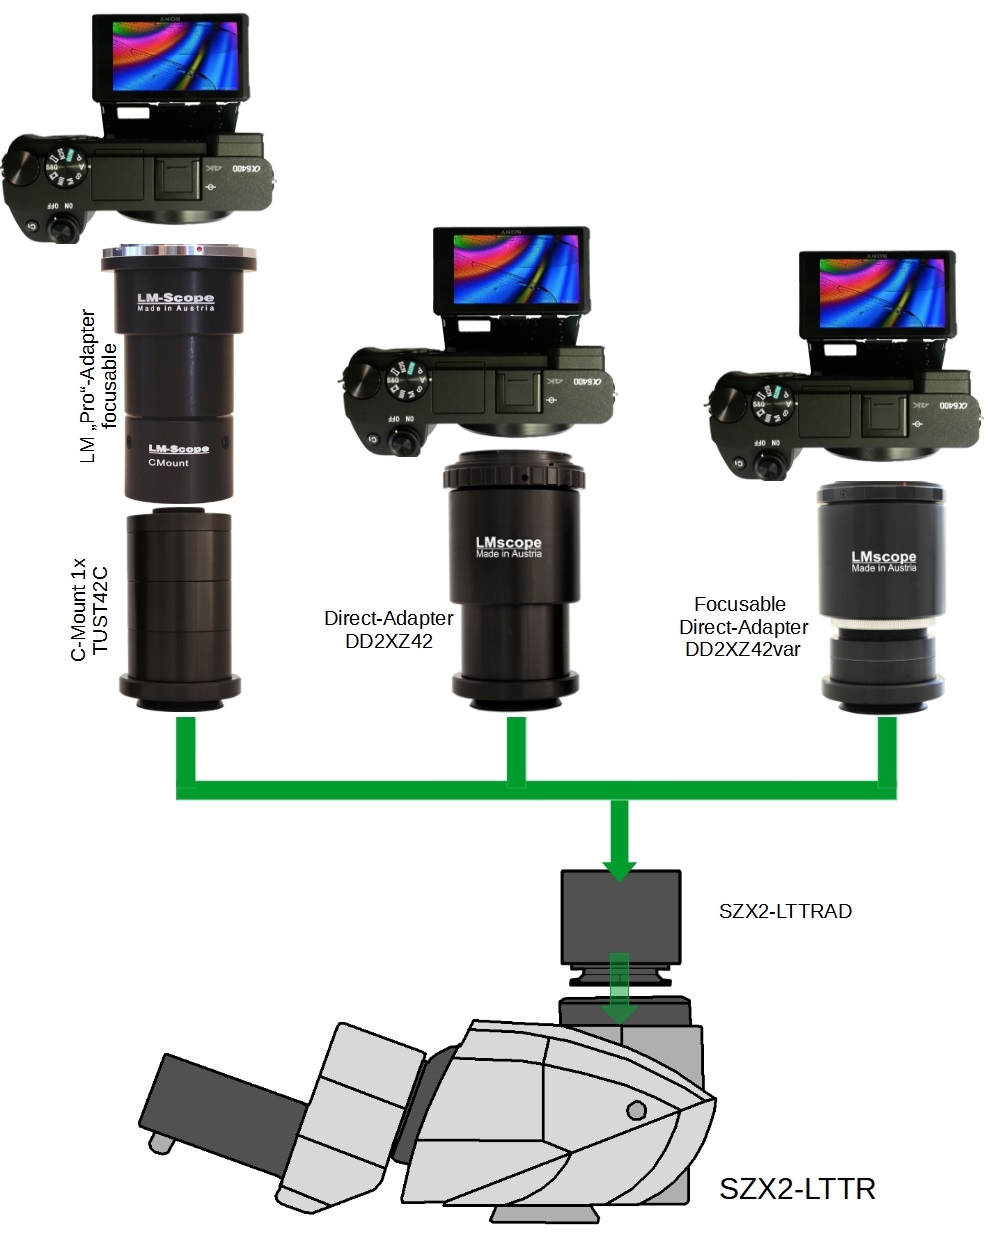  Mikroskop Adapter, die besten Digitalkameras mit unterschiedlichen Adaptervarianten am Olympus SZX2-LTTR Trinotubus